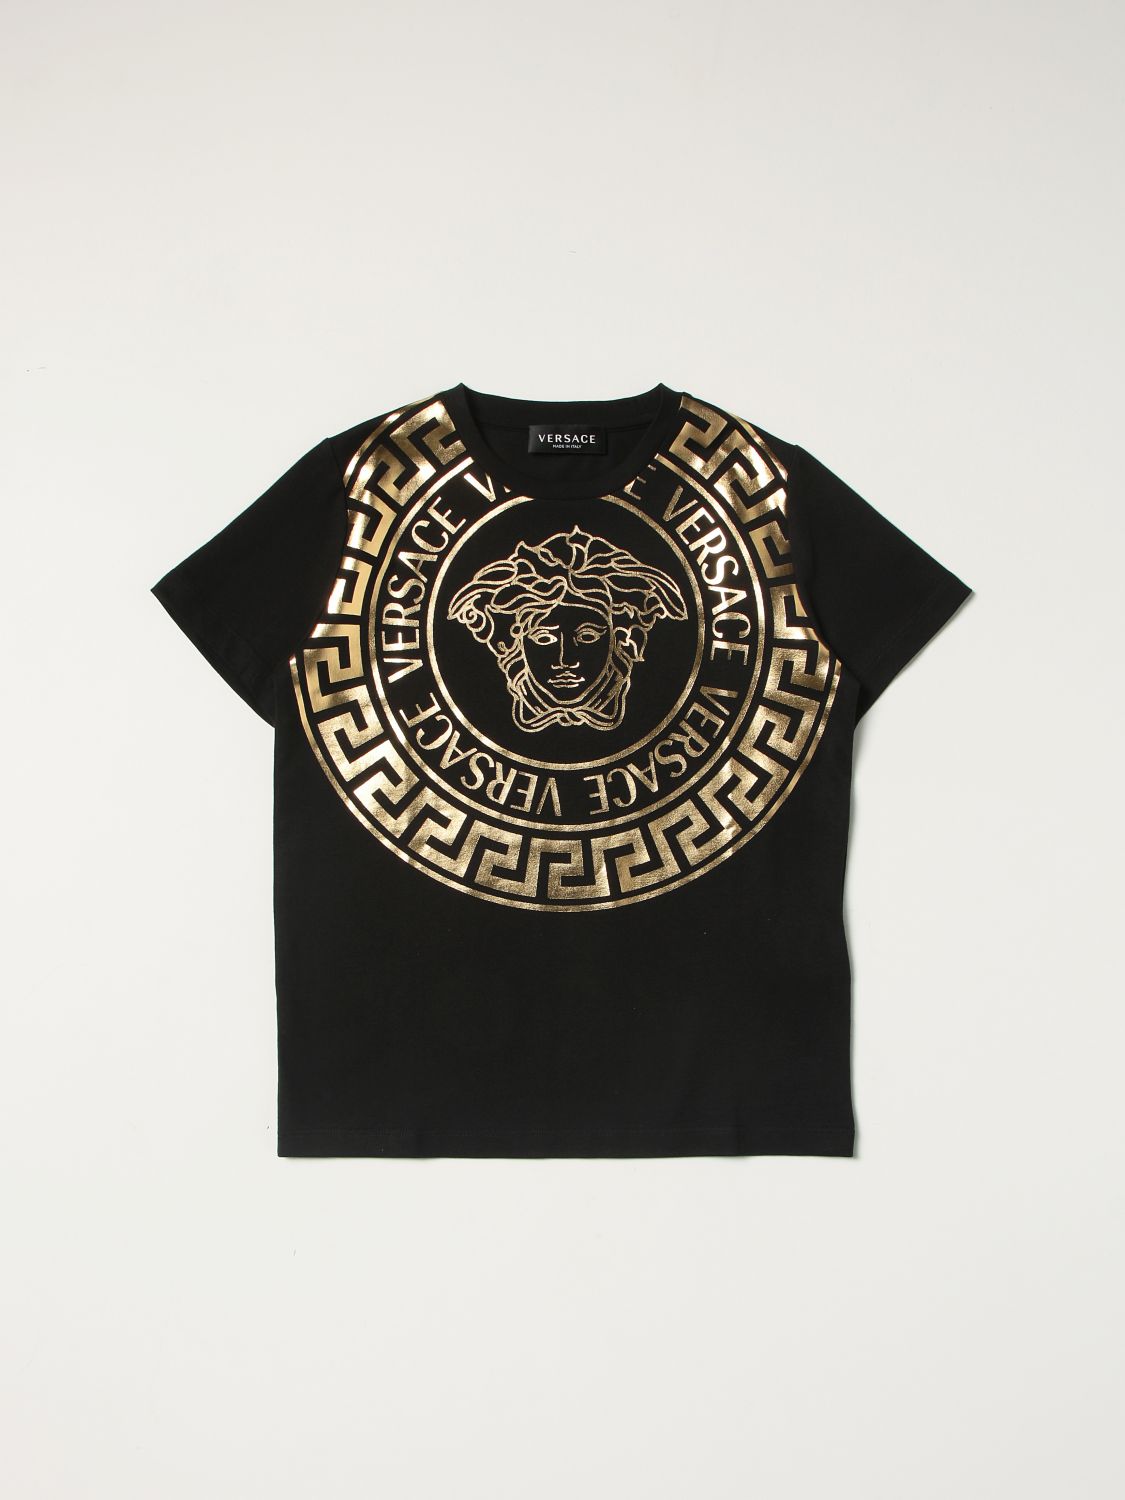 Tシャツ ヤングヴェルサーチェ: Tシャツ Young Versace 男の子 ブラック 1